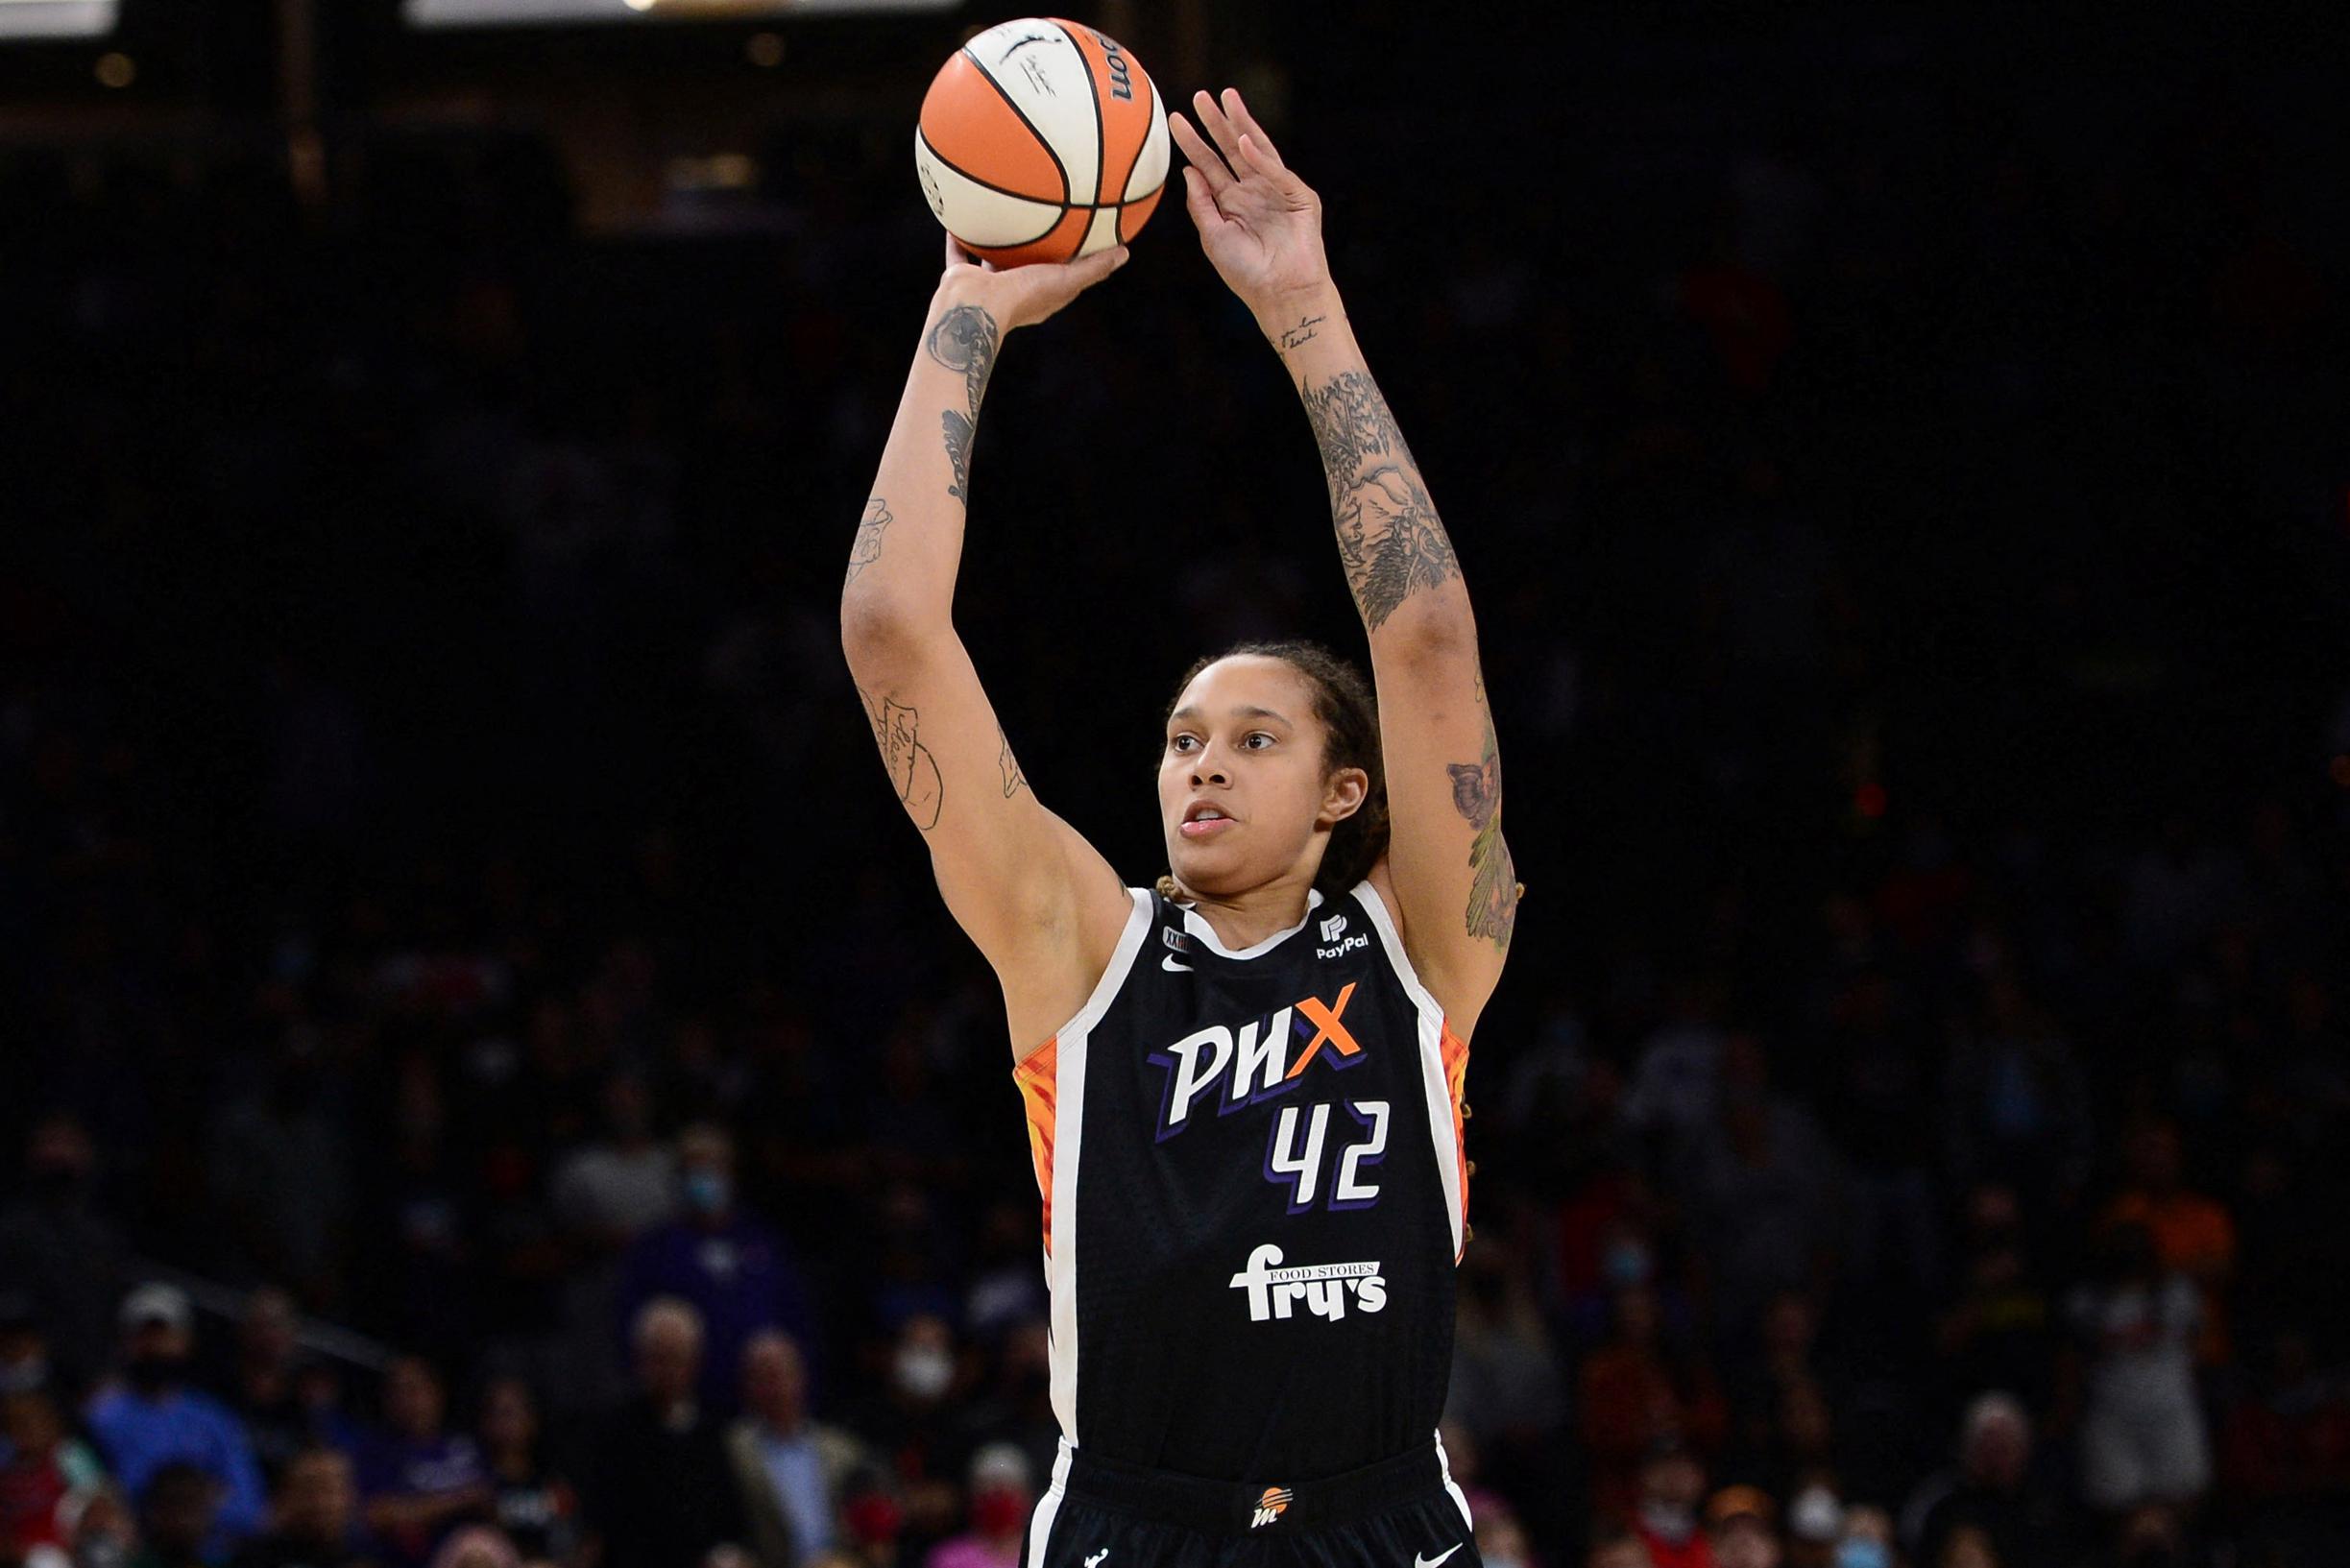 Brittney Griner is na horrorperiode in Russische gevangenis weer officieel basketster met nieuw contract in WNBA